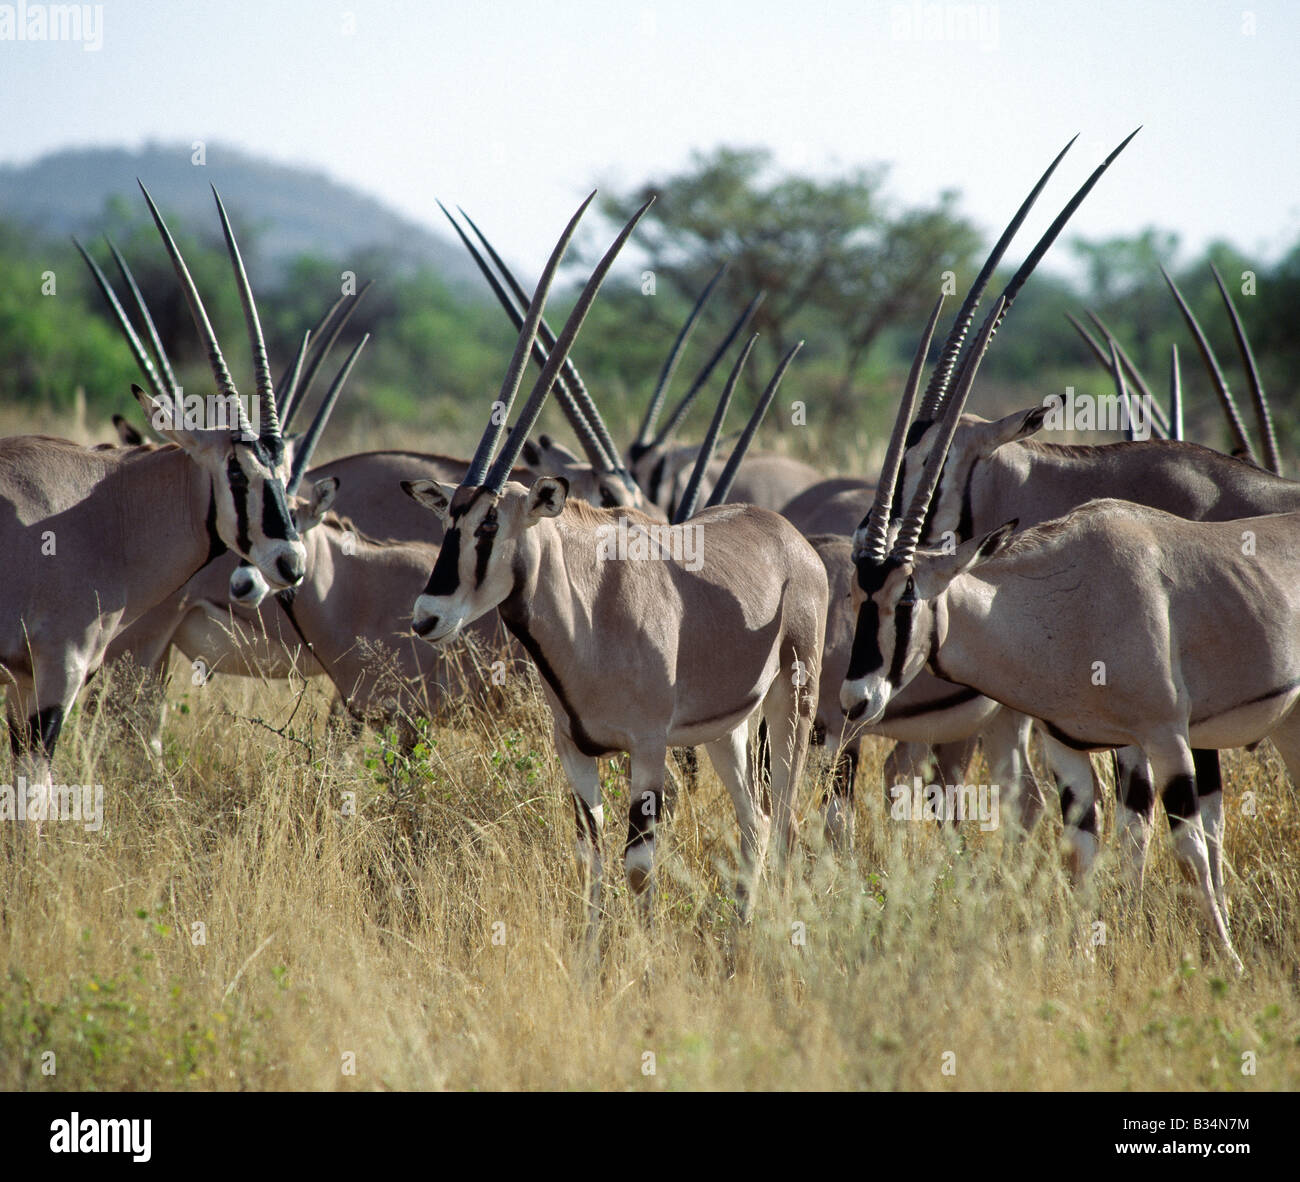 Kenya, Samburu district, Samburu riserva nazionale. Una mandria di oryx (Oryx beisa) nel Samburu Riserva nazionale del Kenia settentrionale. I segni distintivi e il lungo rettilineo di corna di queste belle antilopi li distinguono da altri animali delle pianure del nord. Essi abitano in zone aride, si nutrono di erba e sfoglia. La loro capacità di rimanere senza acqua è maggiore di quella del cammello.insolitamente, femmina corna sono più lunghi di quelli dei maschi. . Foto Stock